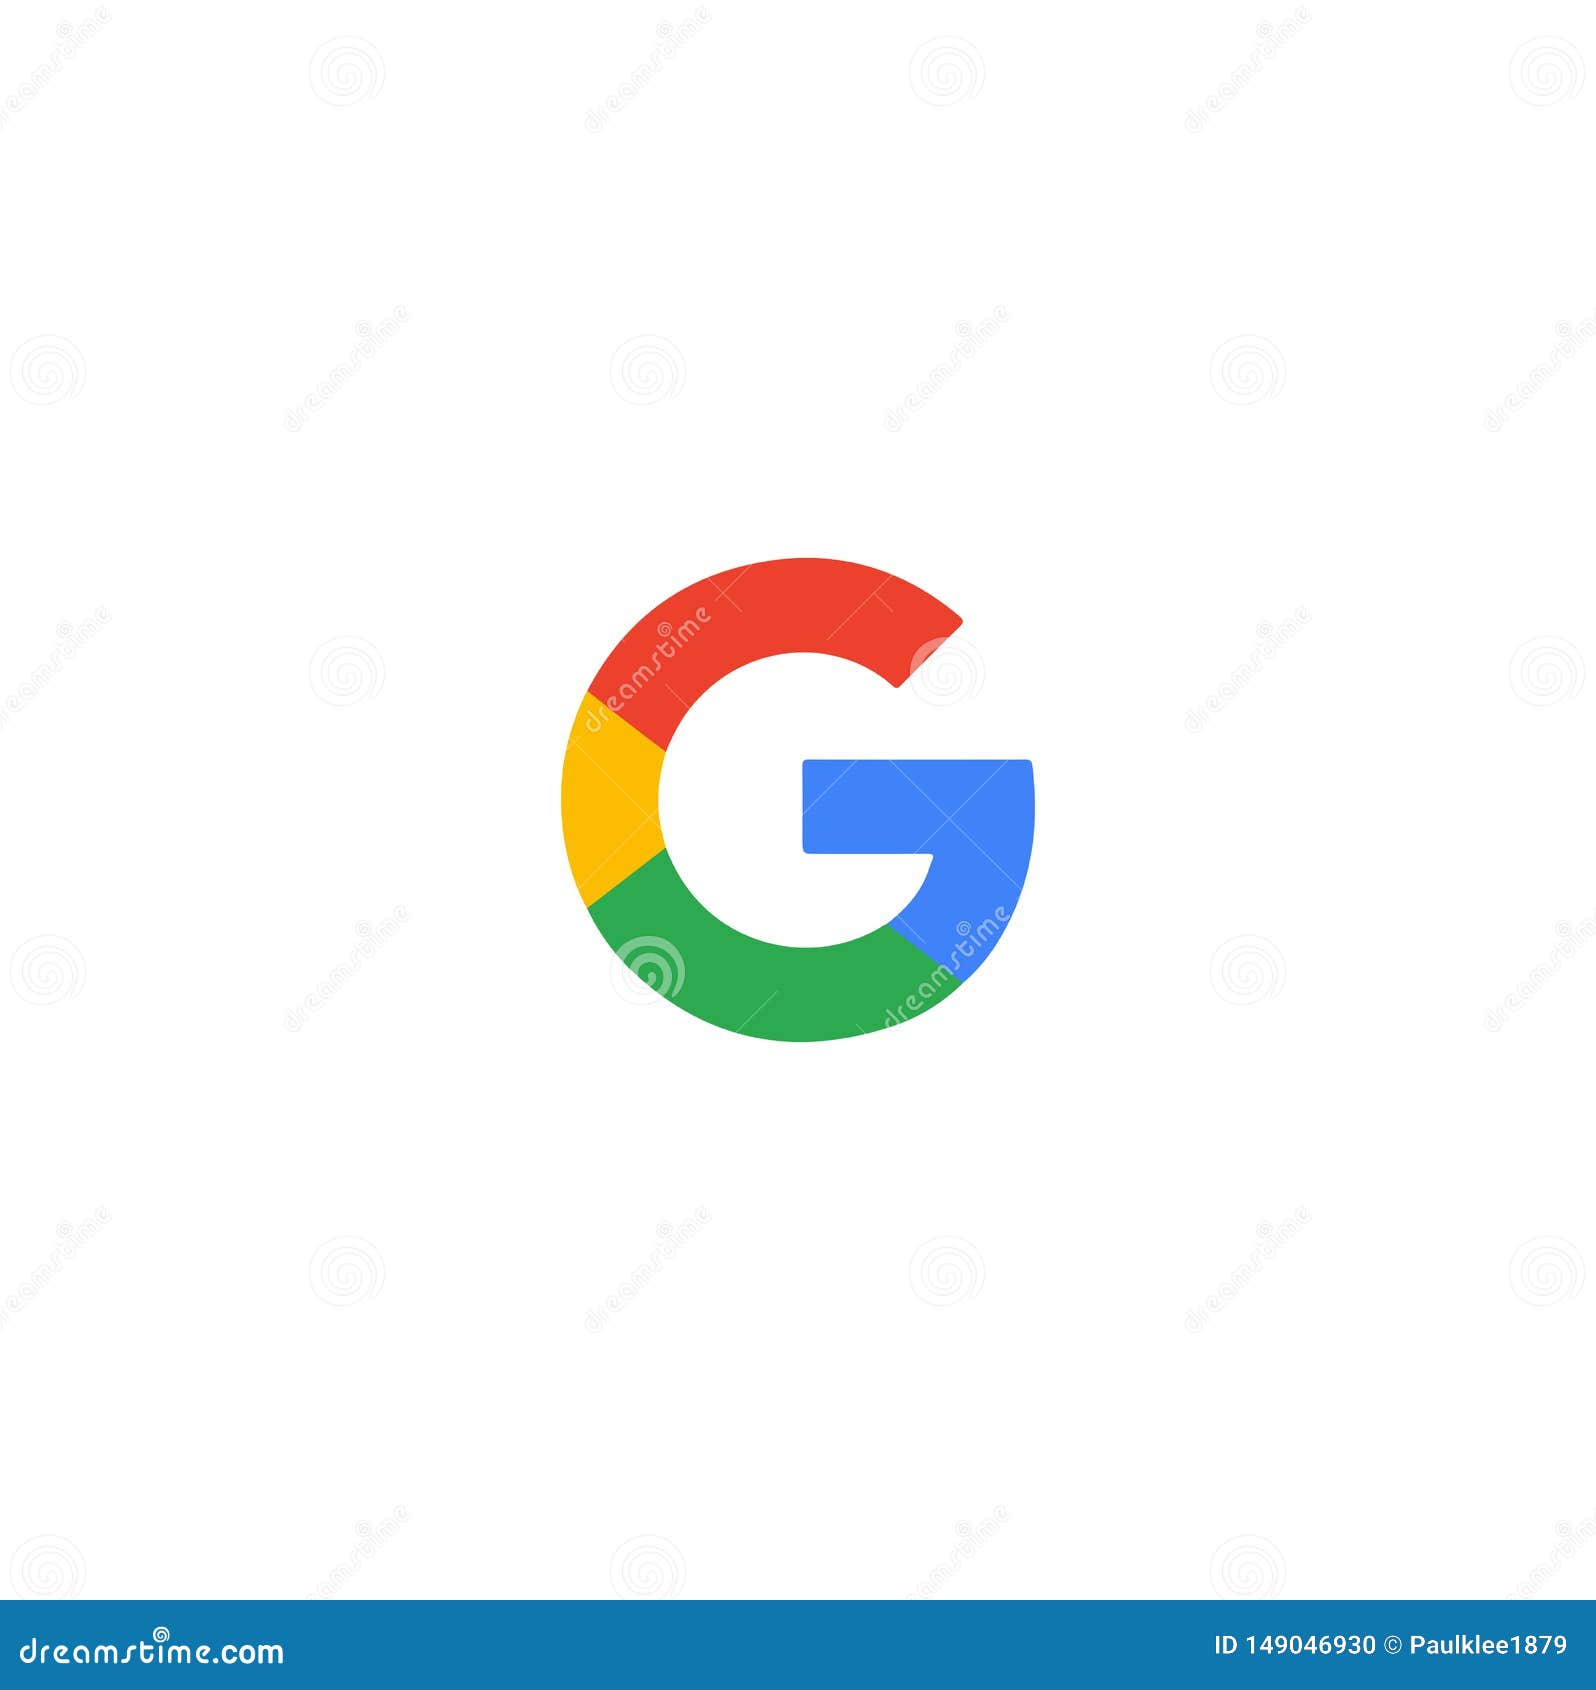 Google logo - Logo của Google đã trở thành biểu tượng của công nghệ và sáng tạo. Hãy đến với chúng tôi để xem những hình ảnh liên quan đến Google logo và cùng khám phá thêm về một trong những thương hiệu lớn nhất thế giới.